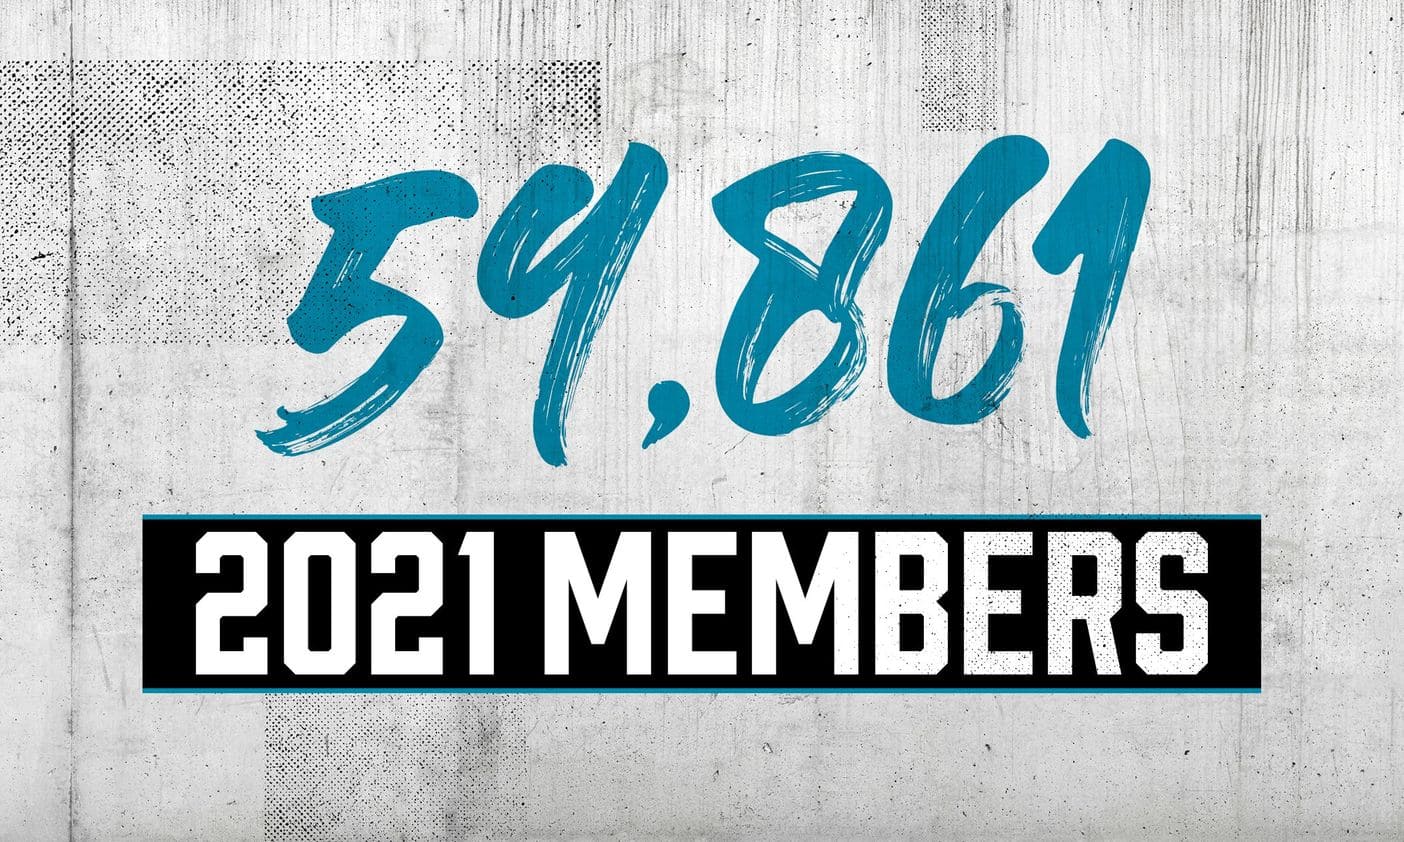 Membership-Number-13-jul.jpg